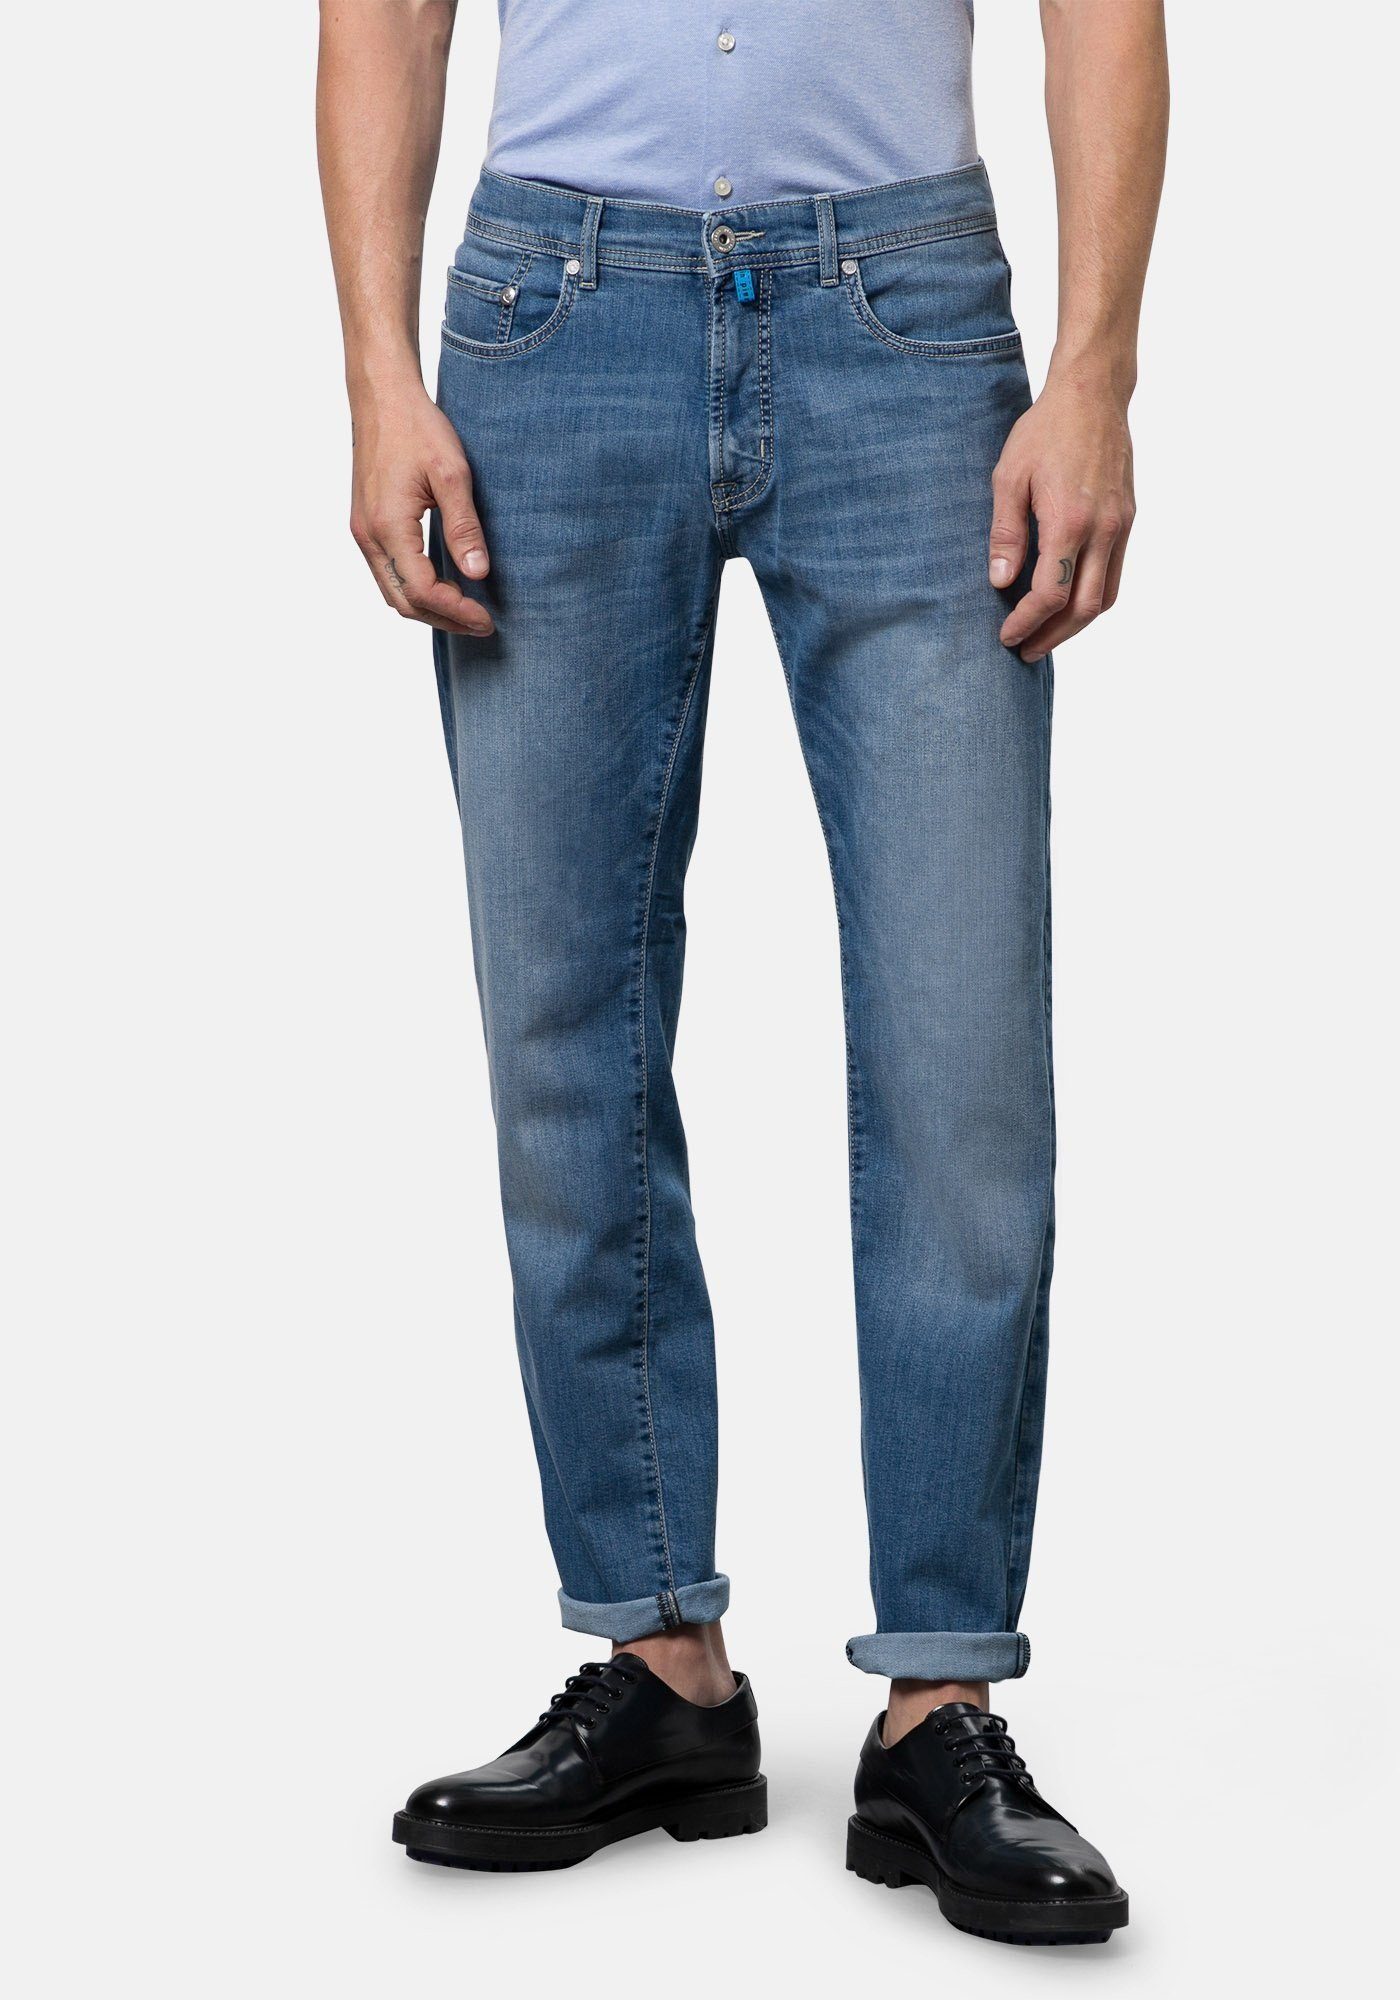 5-Pocket-Jeans Jeans Cardin Denim Control Lyon Clima Pierre